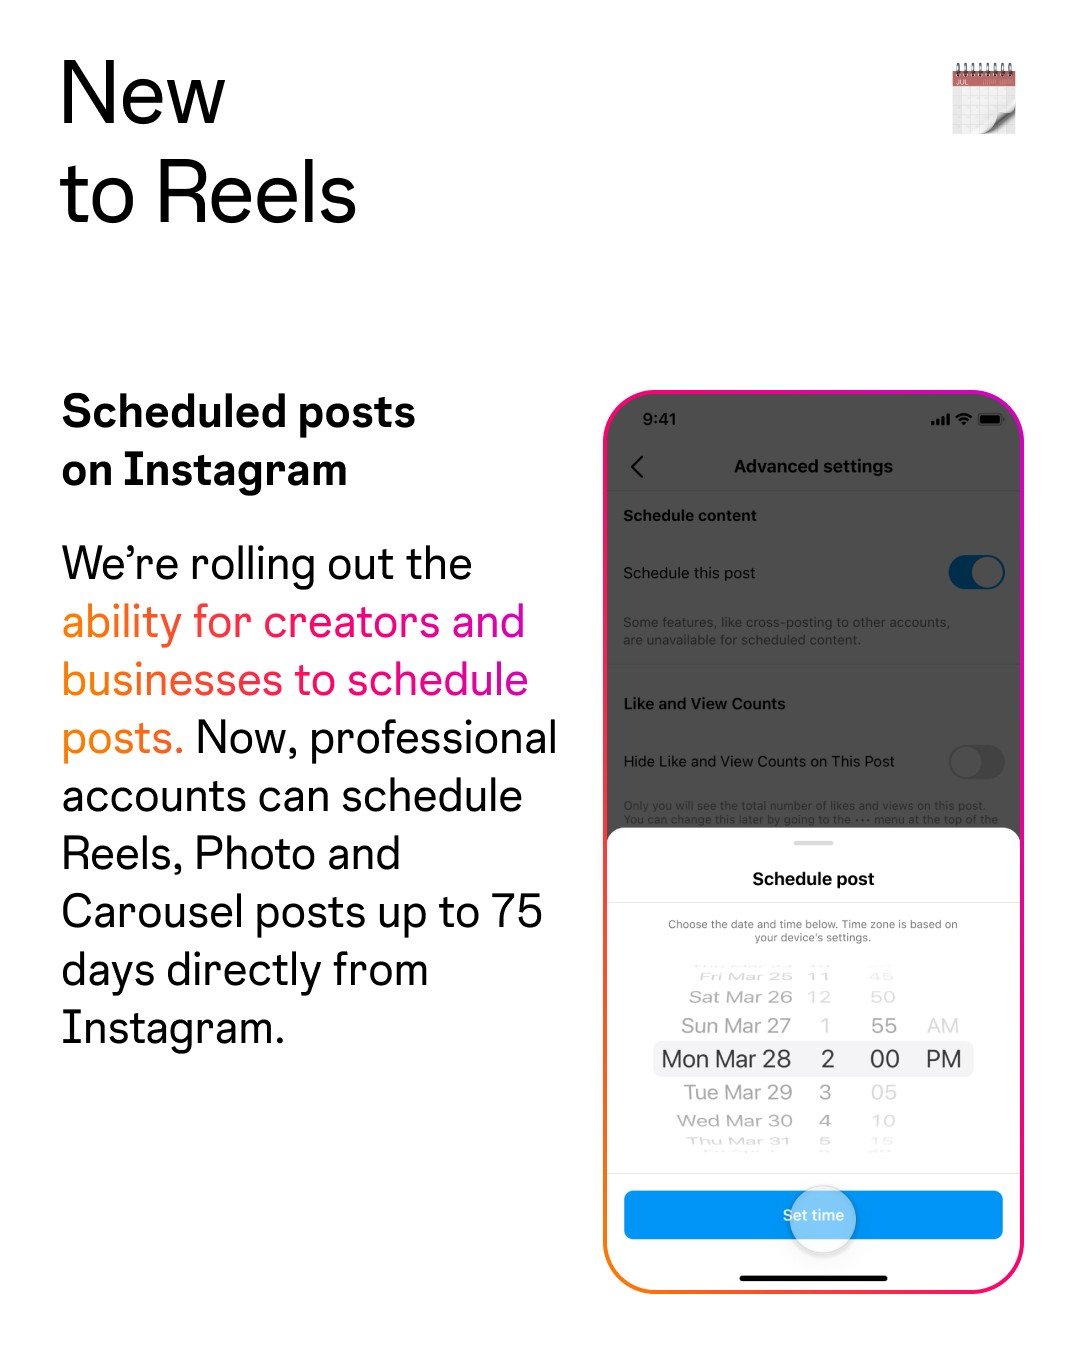 Nova ferramenta permite o agendamento diretamente pelo app do Instagram.